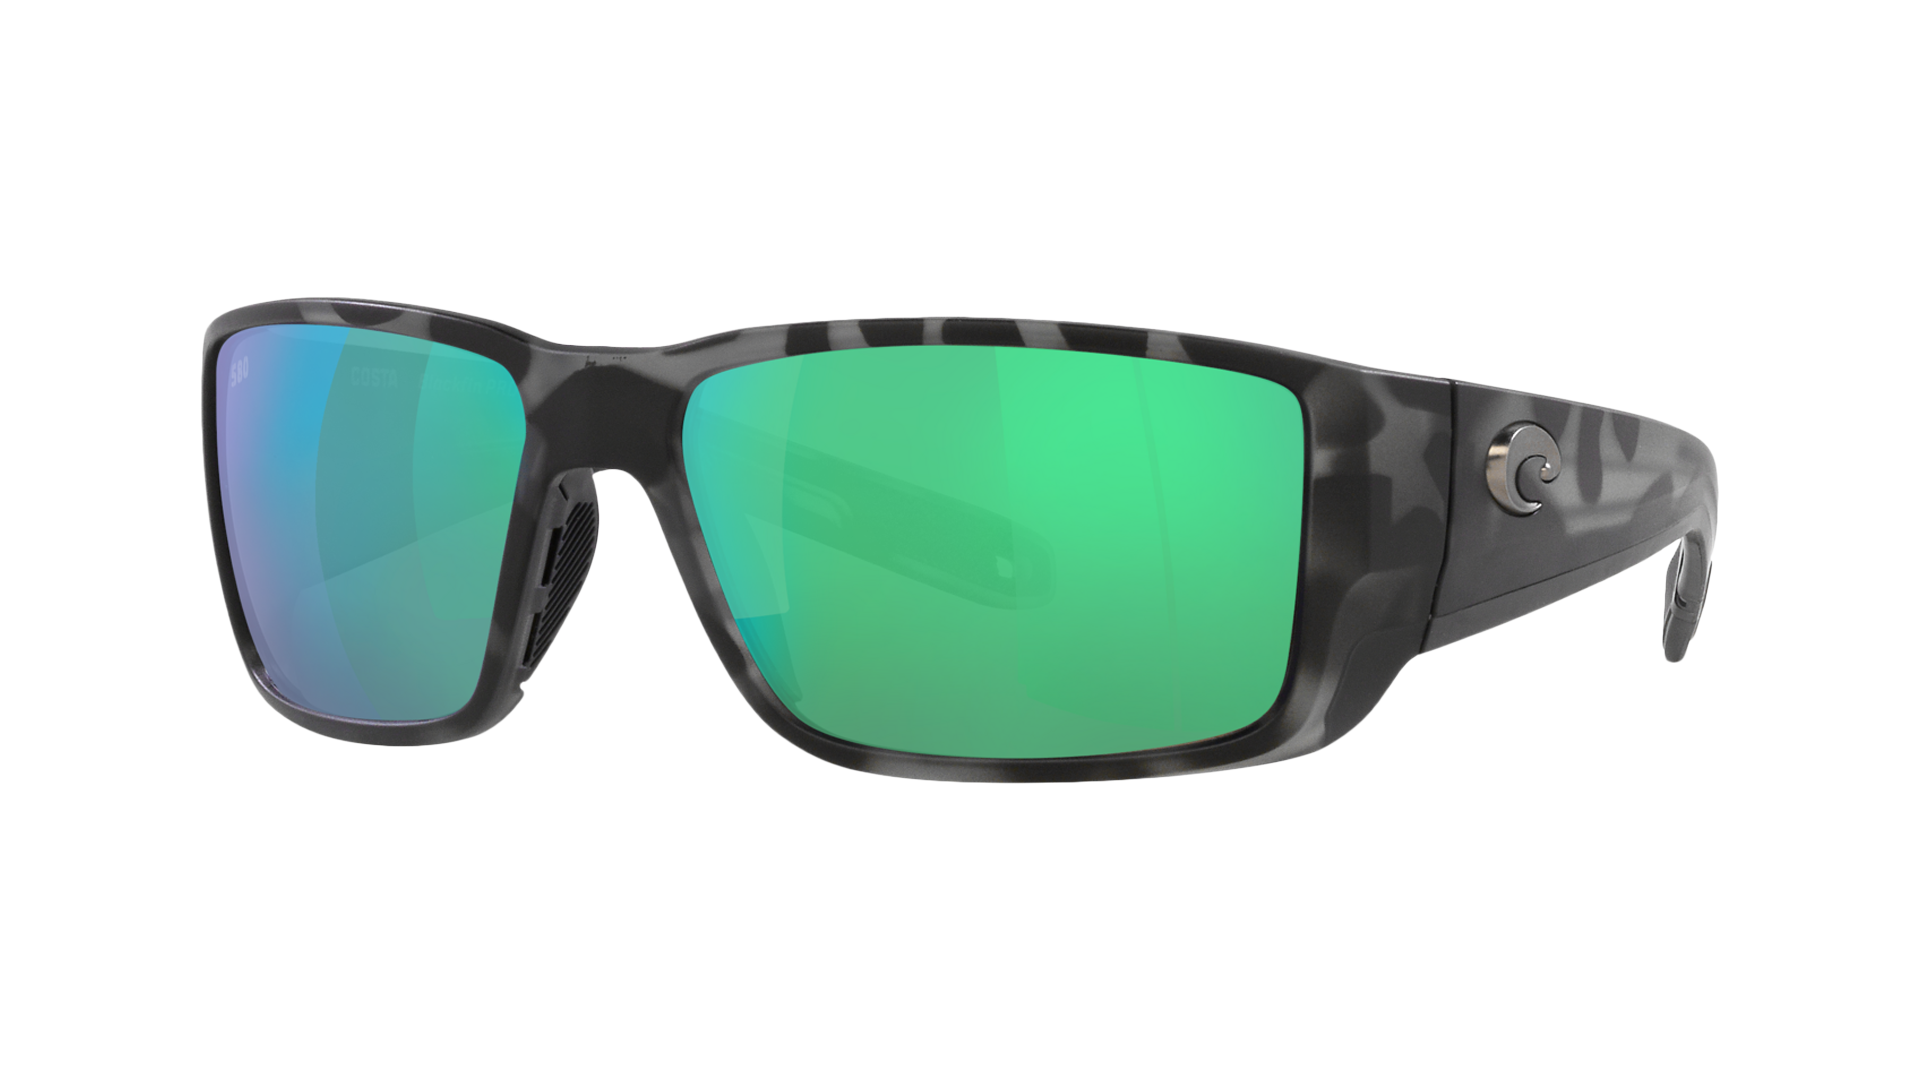 Costa del Mar Blackfin Pro polarized sunglasses for fishing